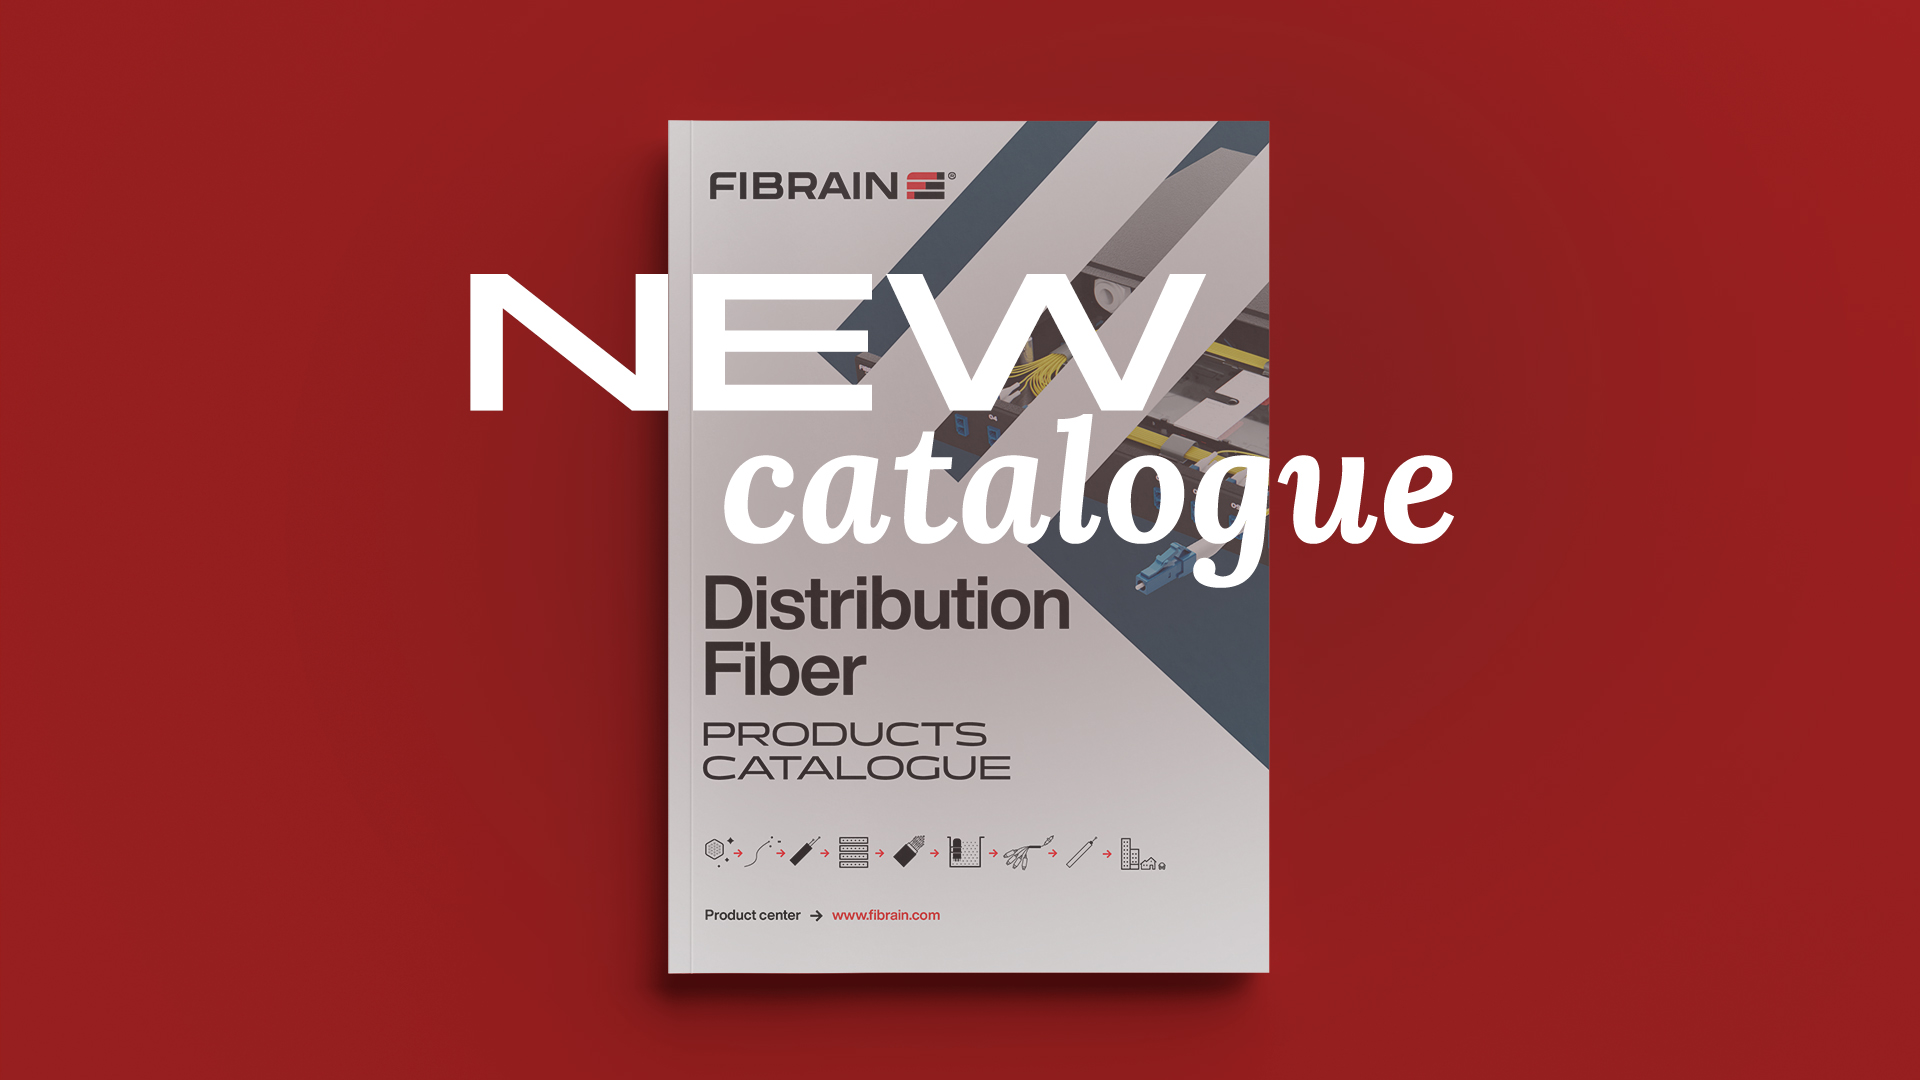 New Distribution Fiber catalogue!